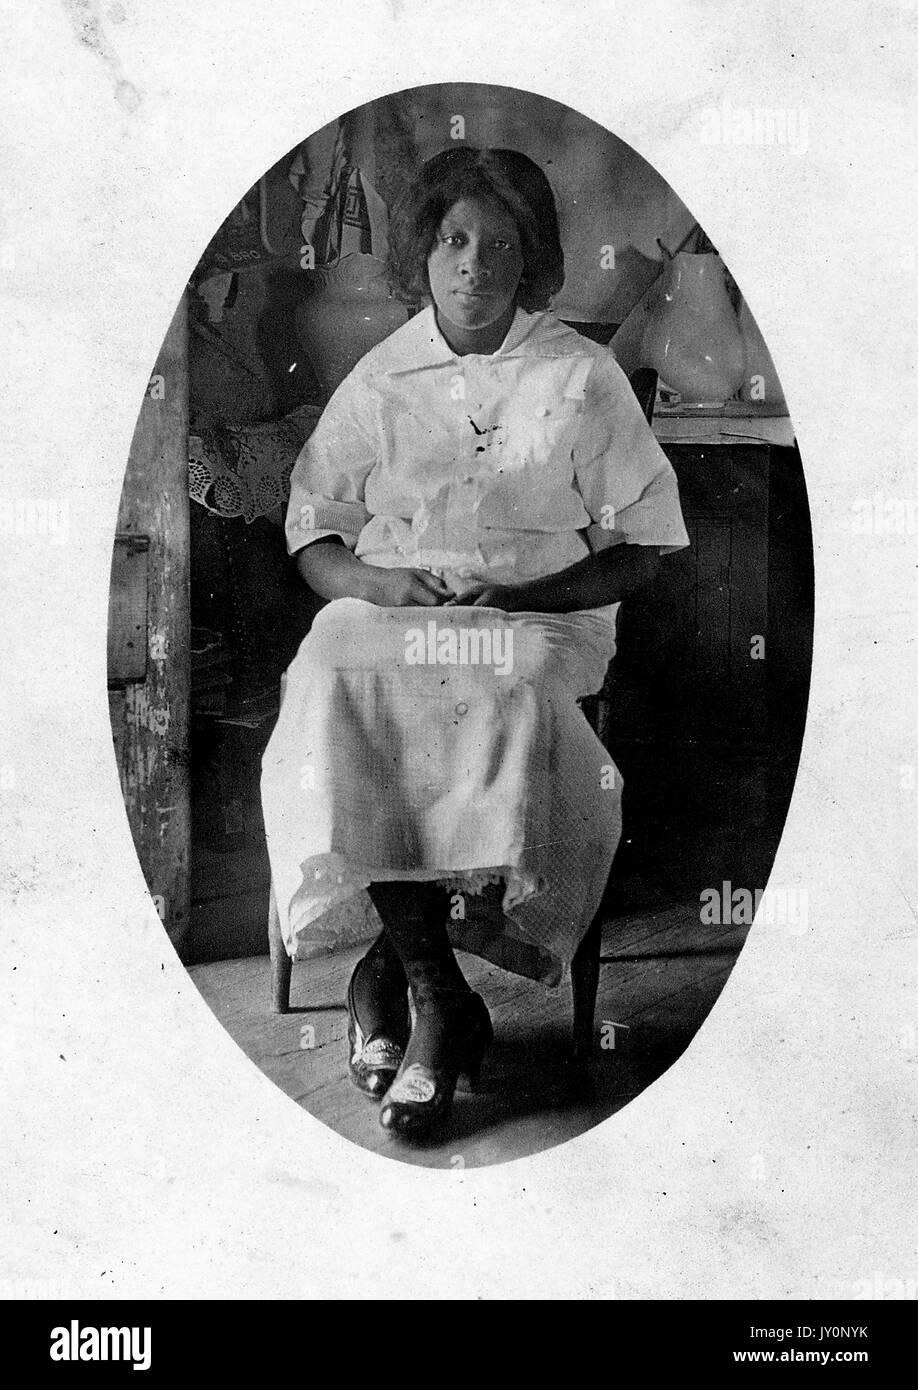 Ritratto seduta a lunghezza intera, donna afroamericana matura, vestita leggera, seduta davanti al mobile con vasi, espressione neutra, 1915. Foto Stock